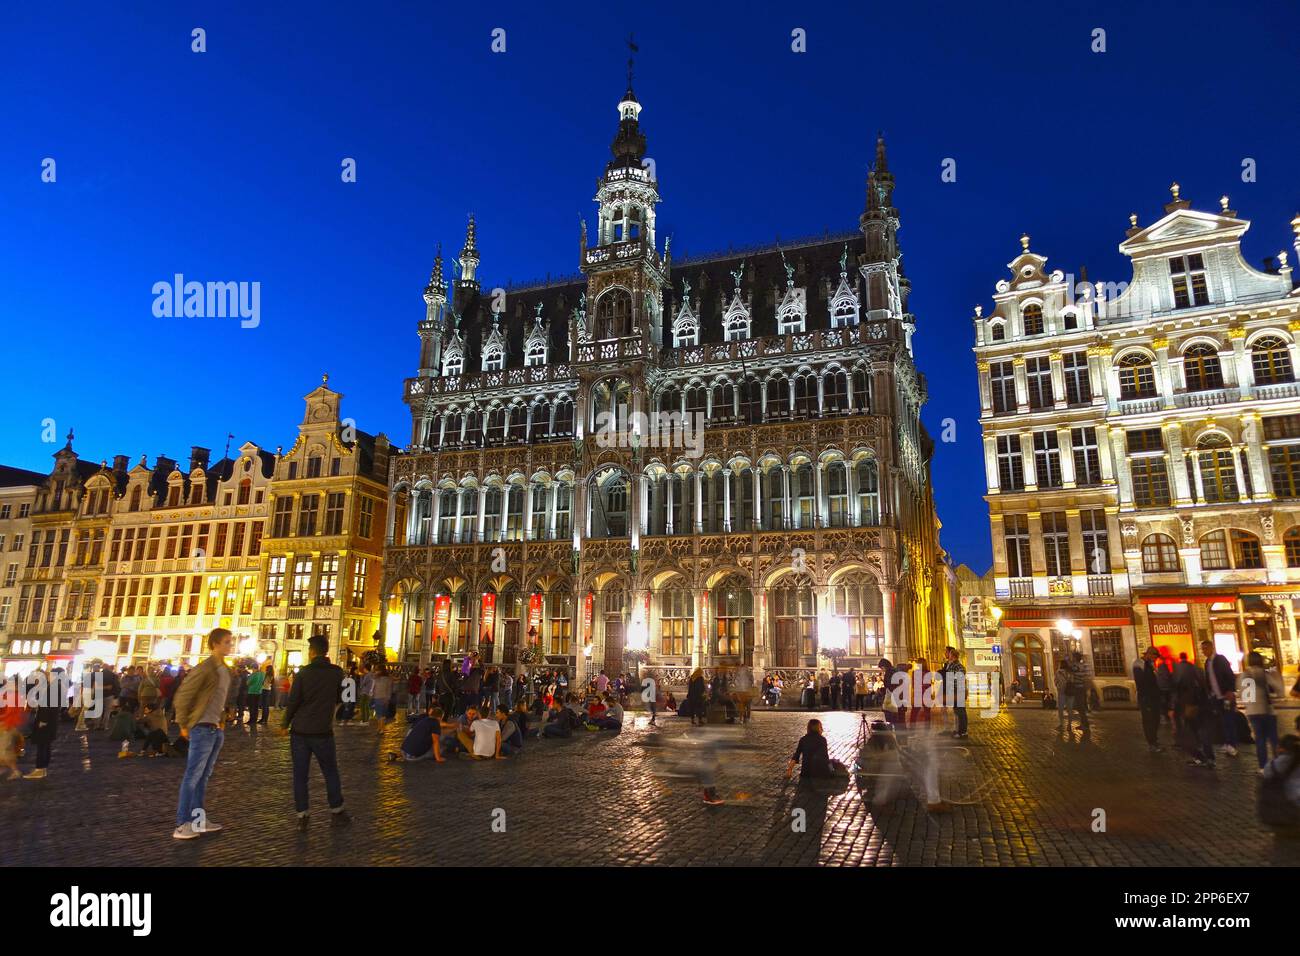 BRUSELAS, BÉLGICA - 4 DE AGOSTO de 2016: La plaza de la ciudad medieval Grand Place o Grote Markt de Bruselas, Patrimonio de la Humanidad de la UNESCO. Foto de stock